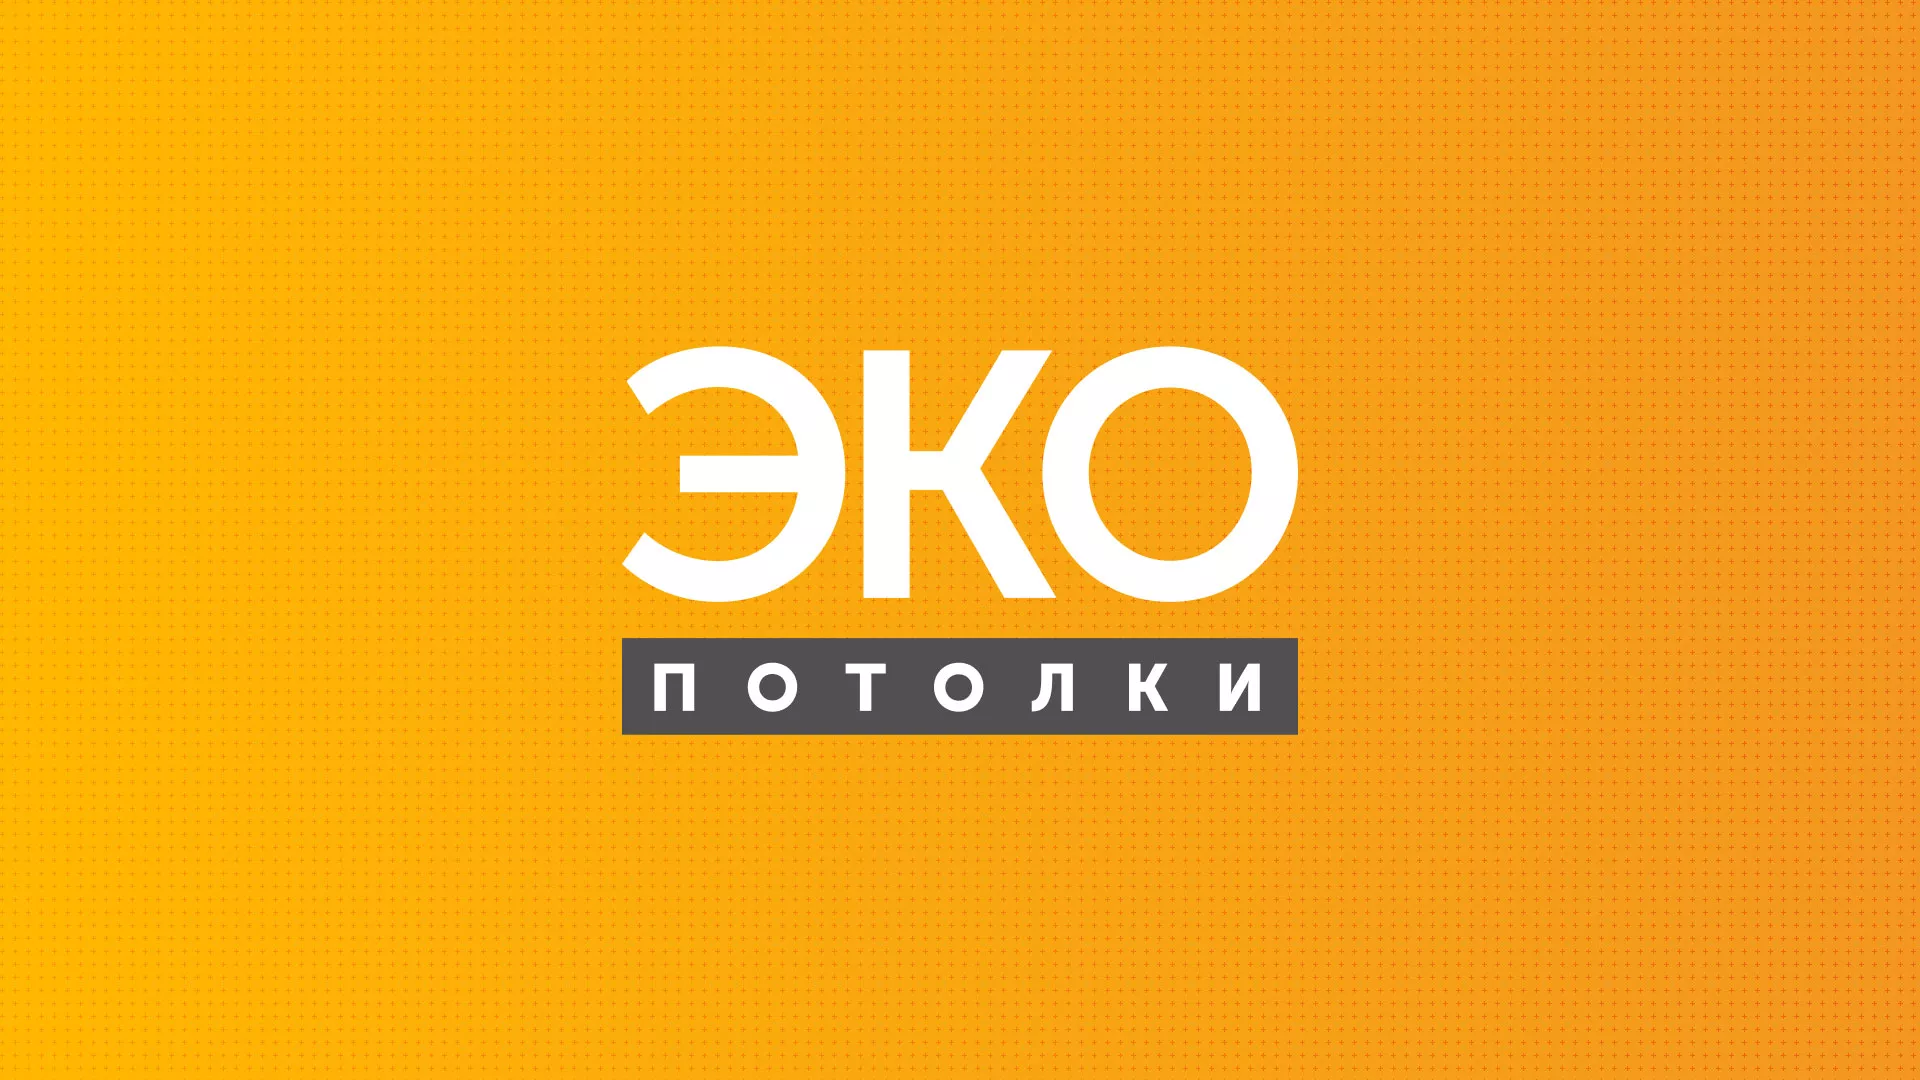 Разработка сайта по натяжным потолкам «Эко Потолки» в Комсомольске-на-Амуре